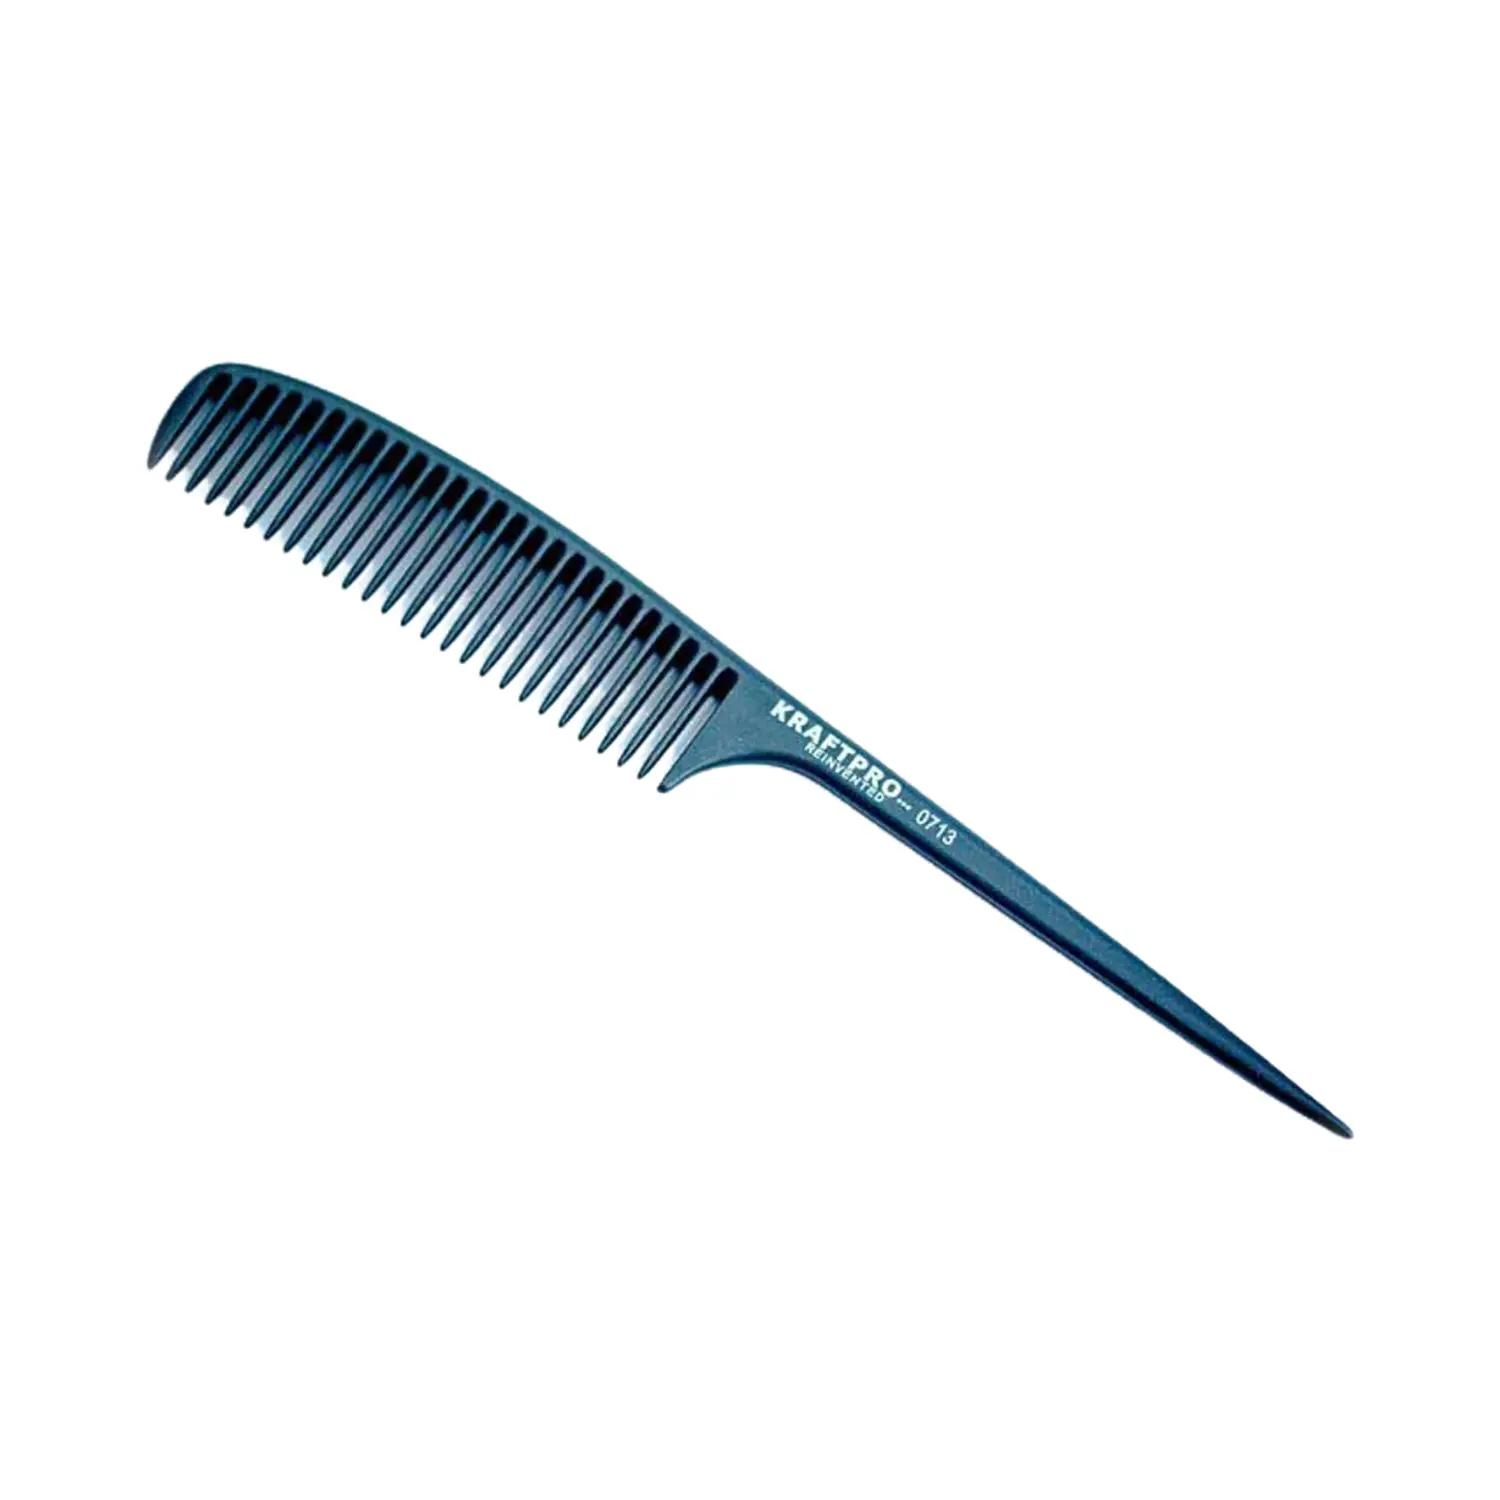 KRAFTPRO Paddle Hair Brush